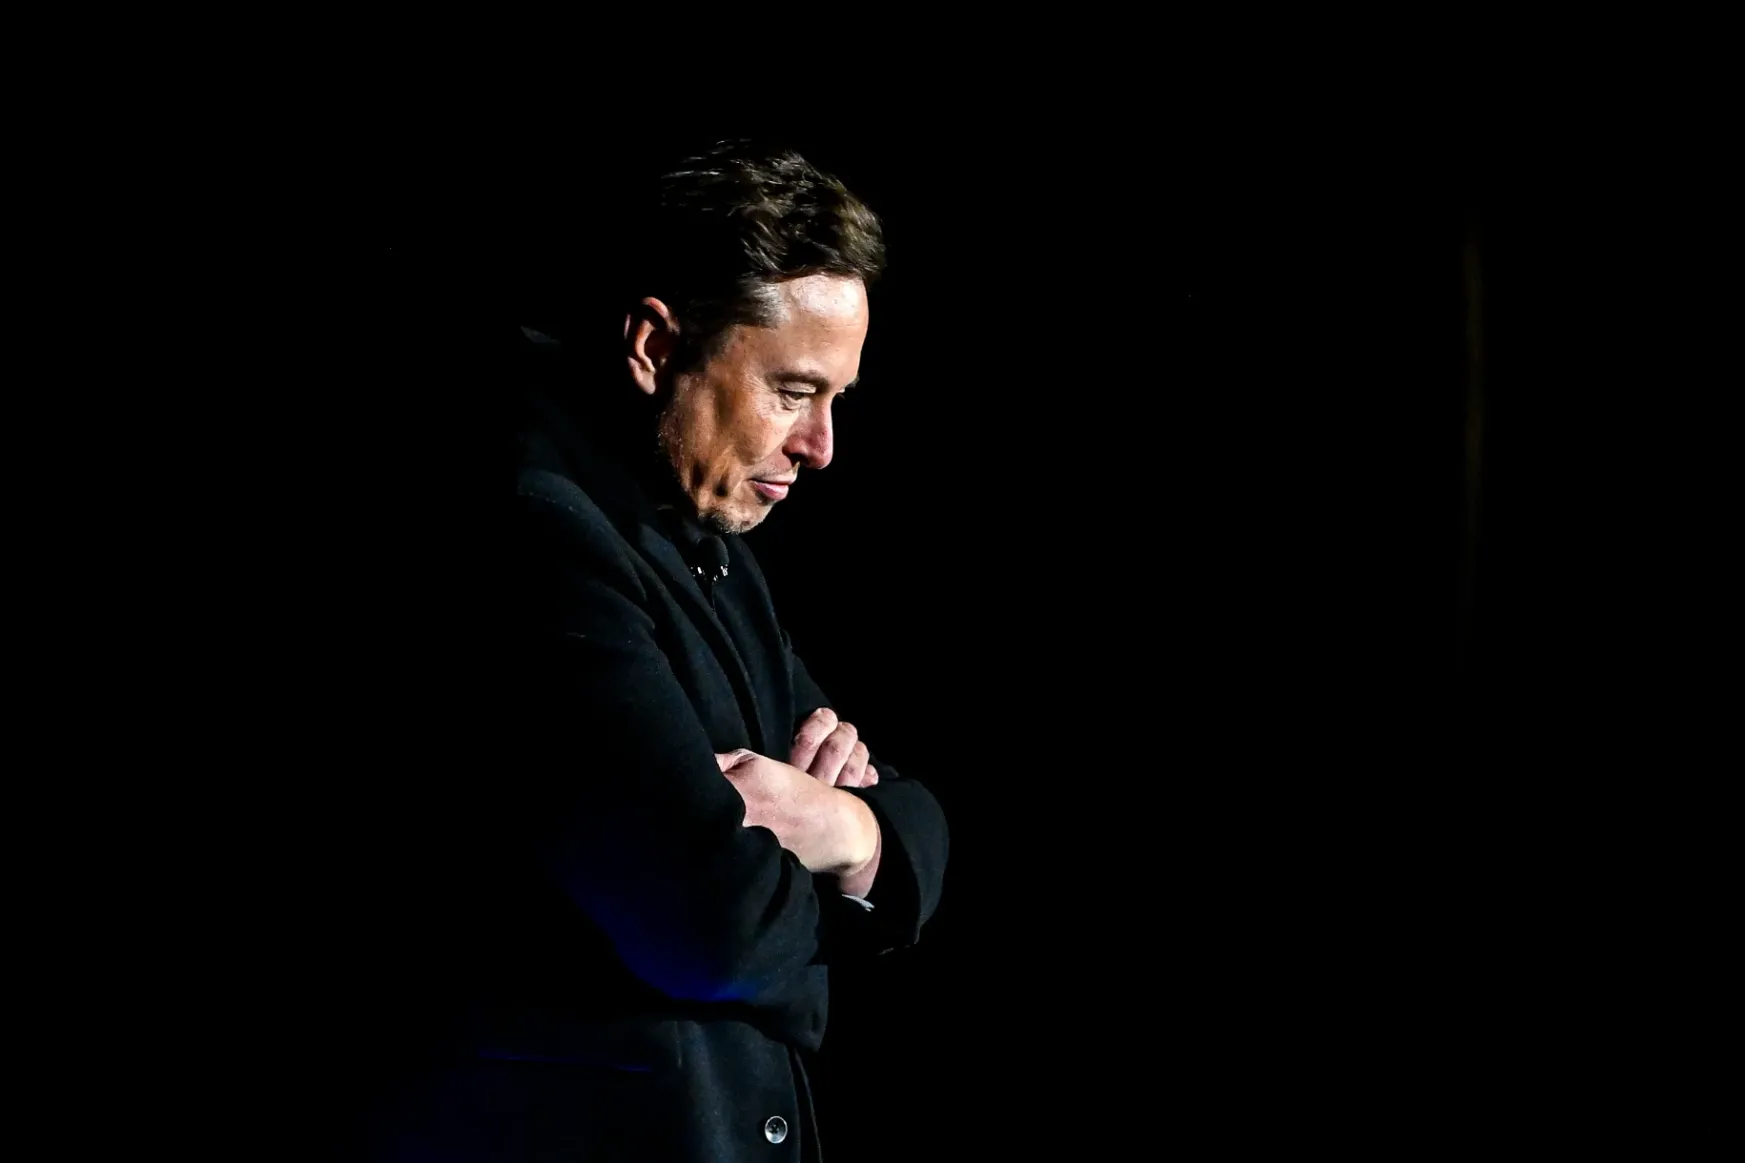 Elon Musk átverte a befektetőit egy Twitter-üzenettel, most menekül az esküdtszék elől